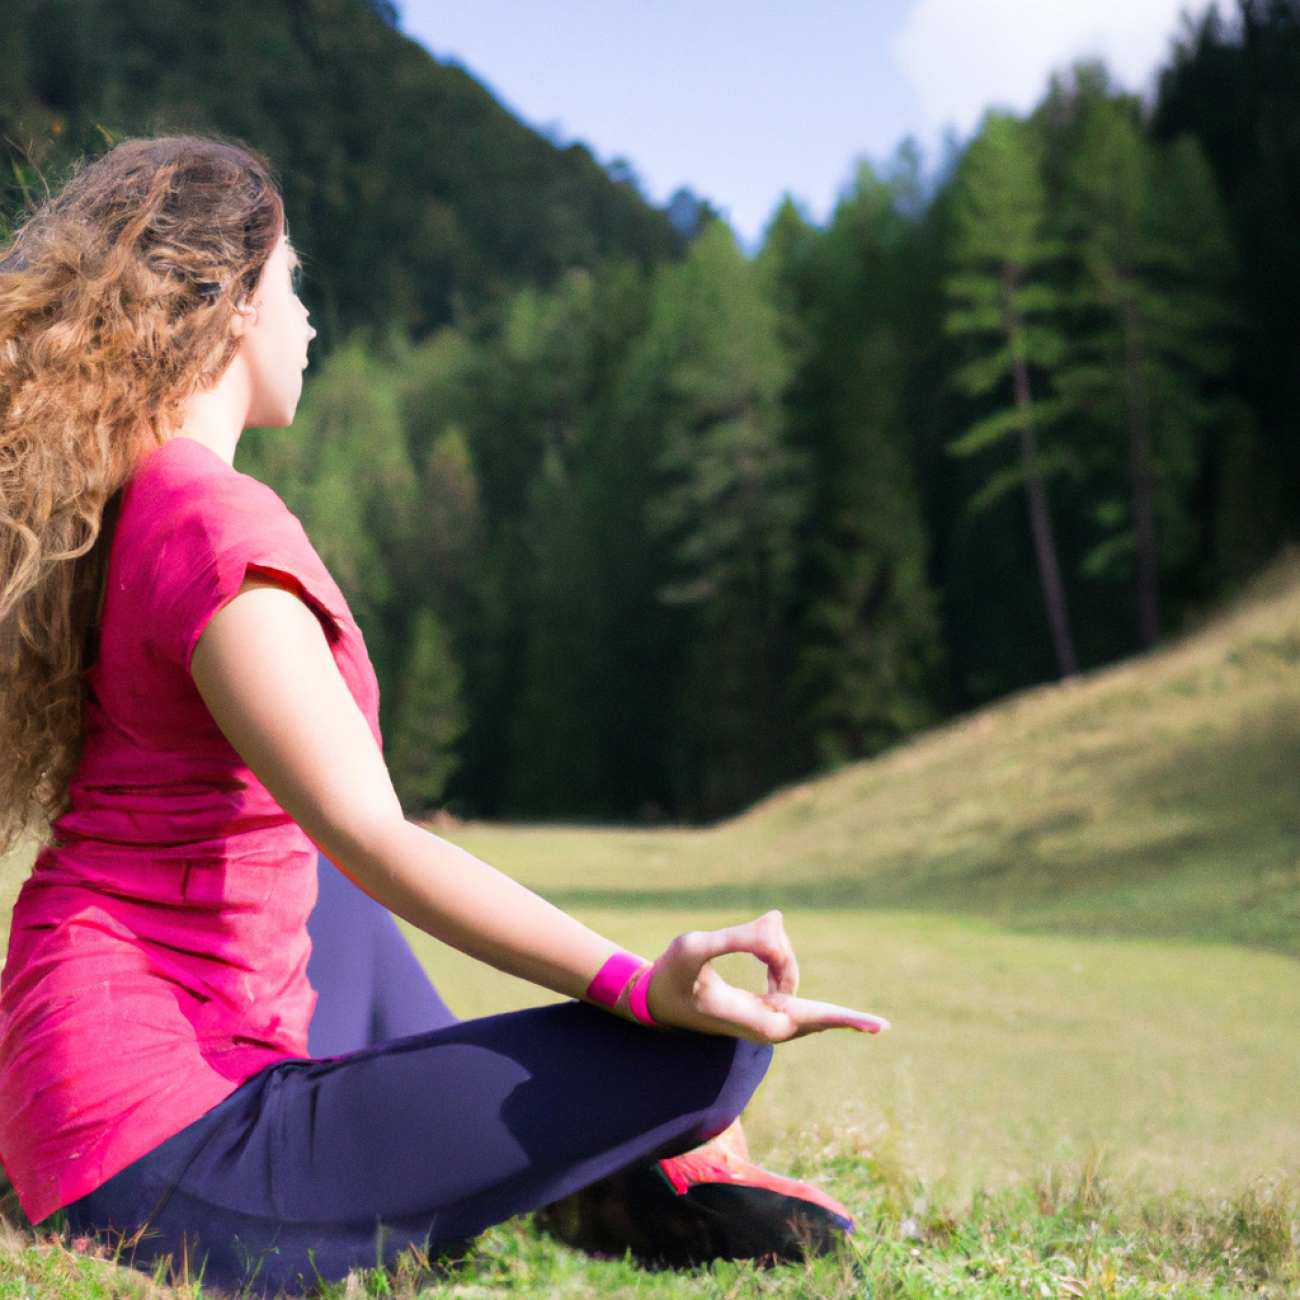 3. Prospěšné meditační techniky pro zklidnění mysli v letním prostředí